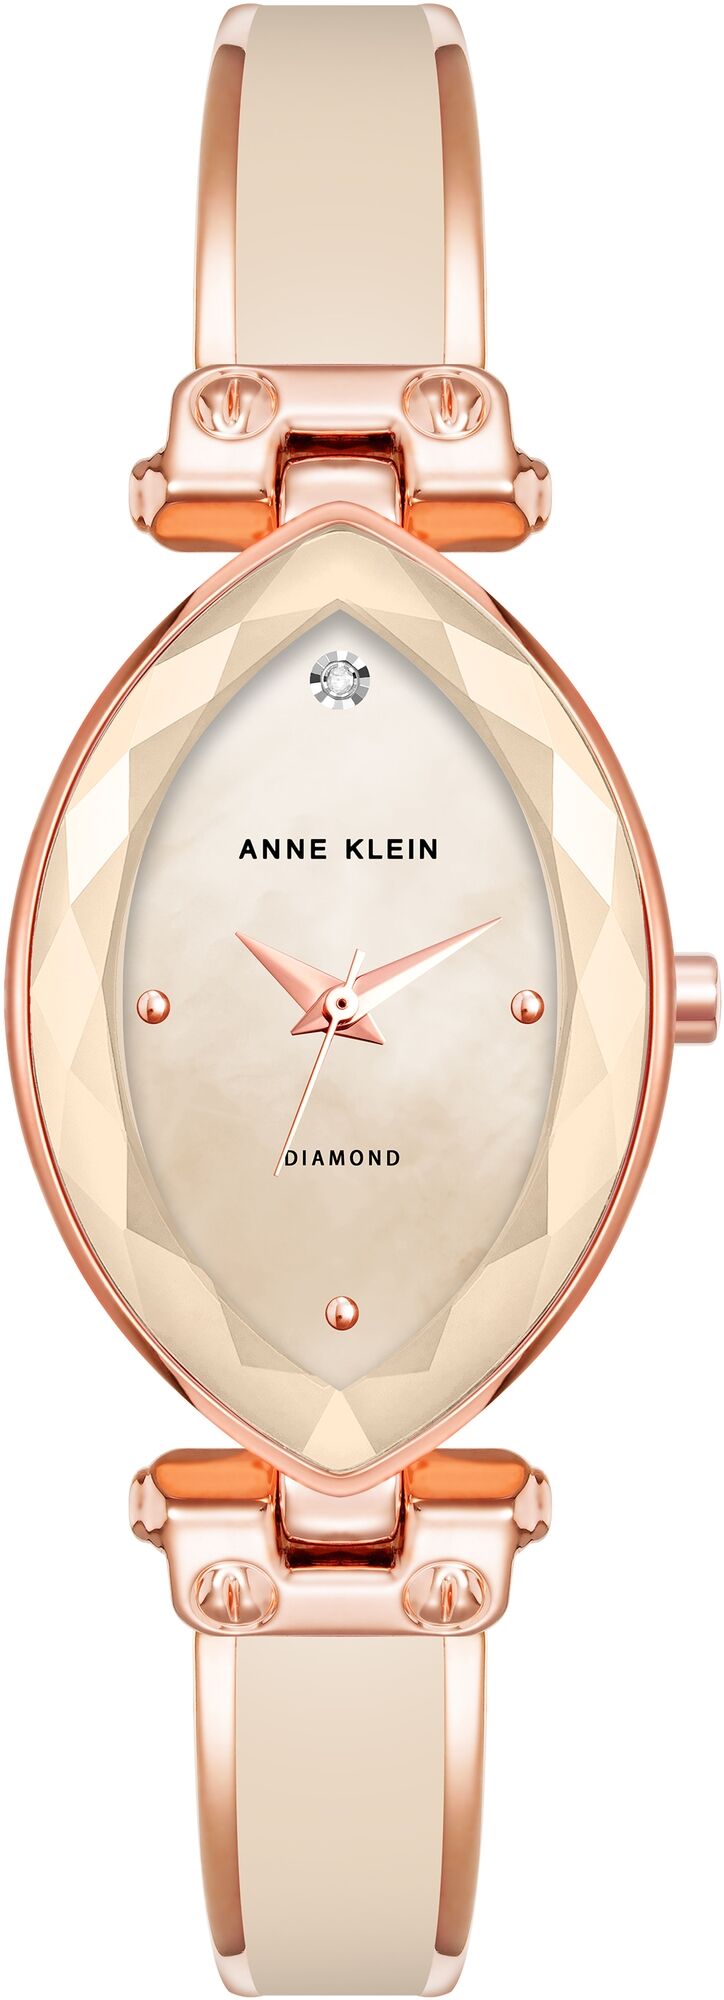 Женские наручные часы Anne Klein Diamond Dial 4018BHRG